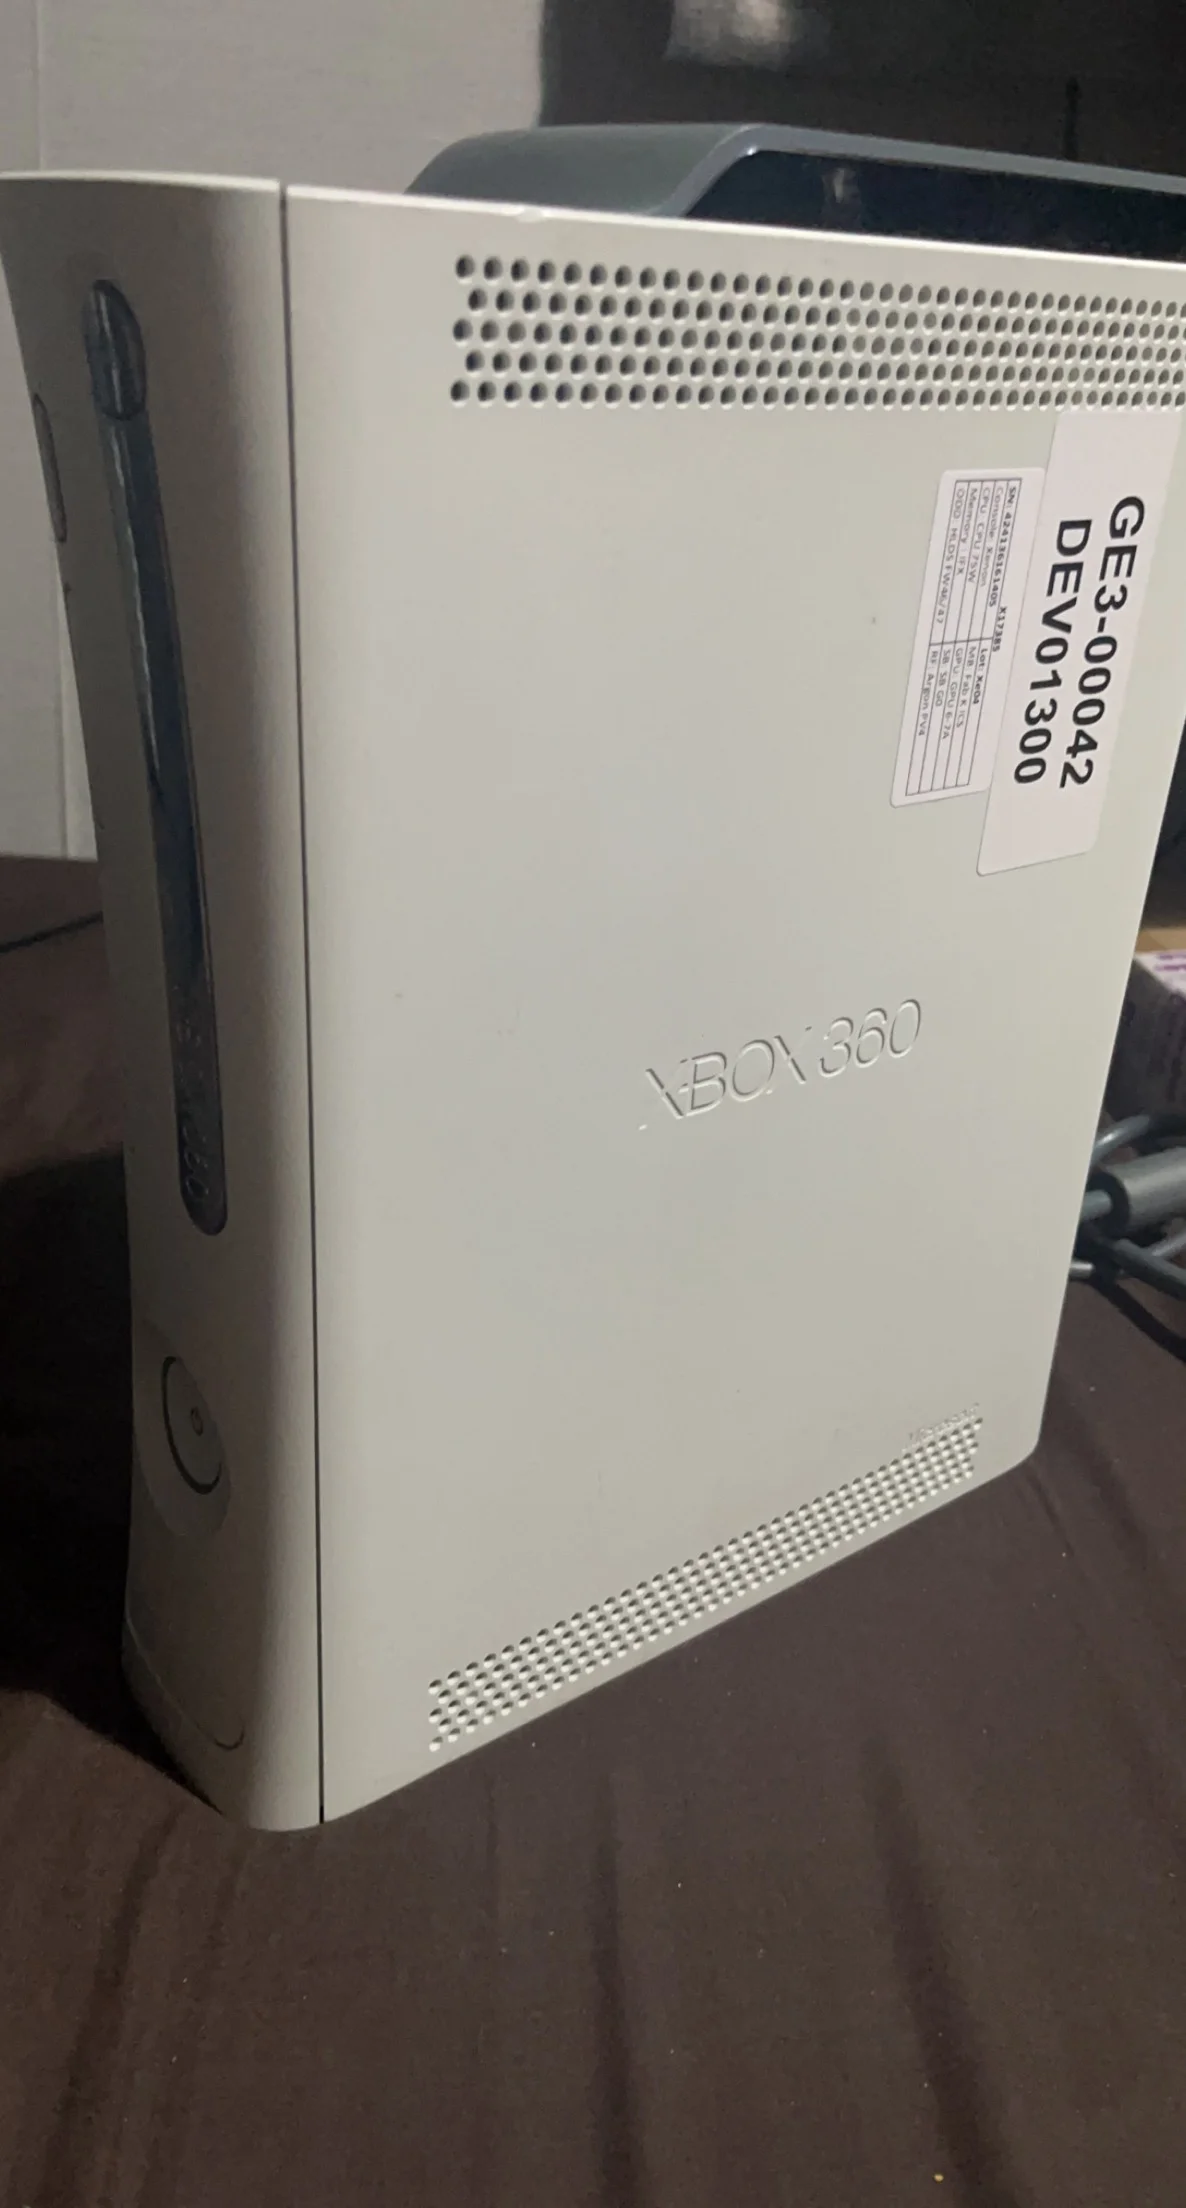  Microsoft Xbox 360 Xenon GE3-00042 DEV01300 Prototype Console